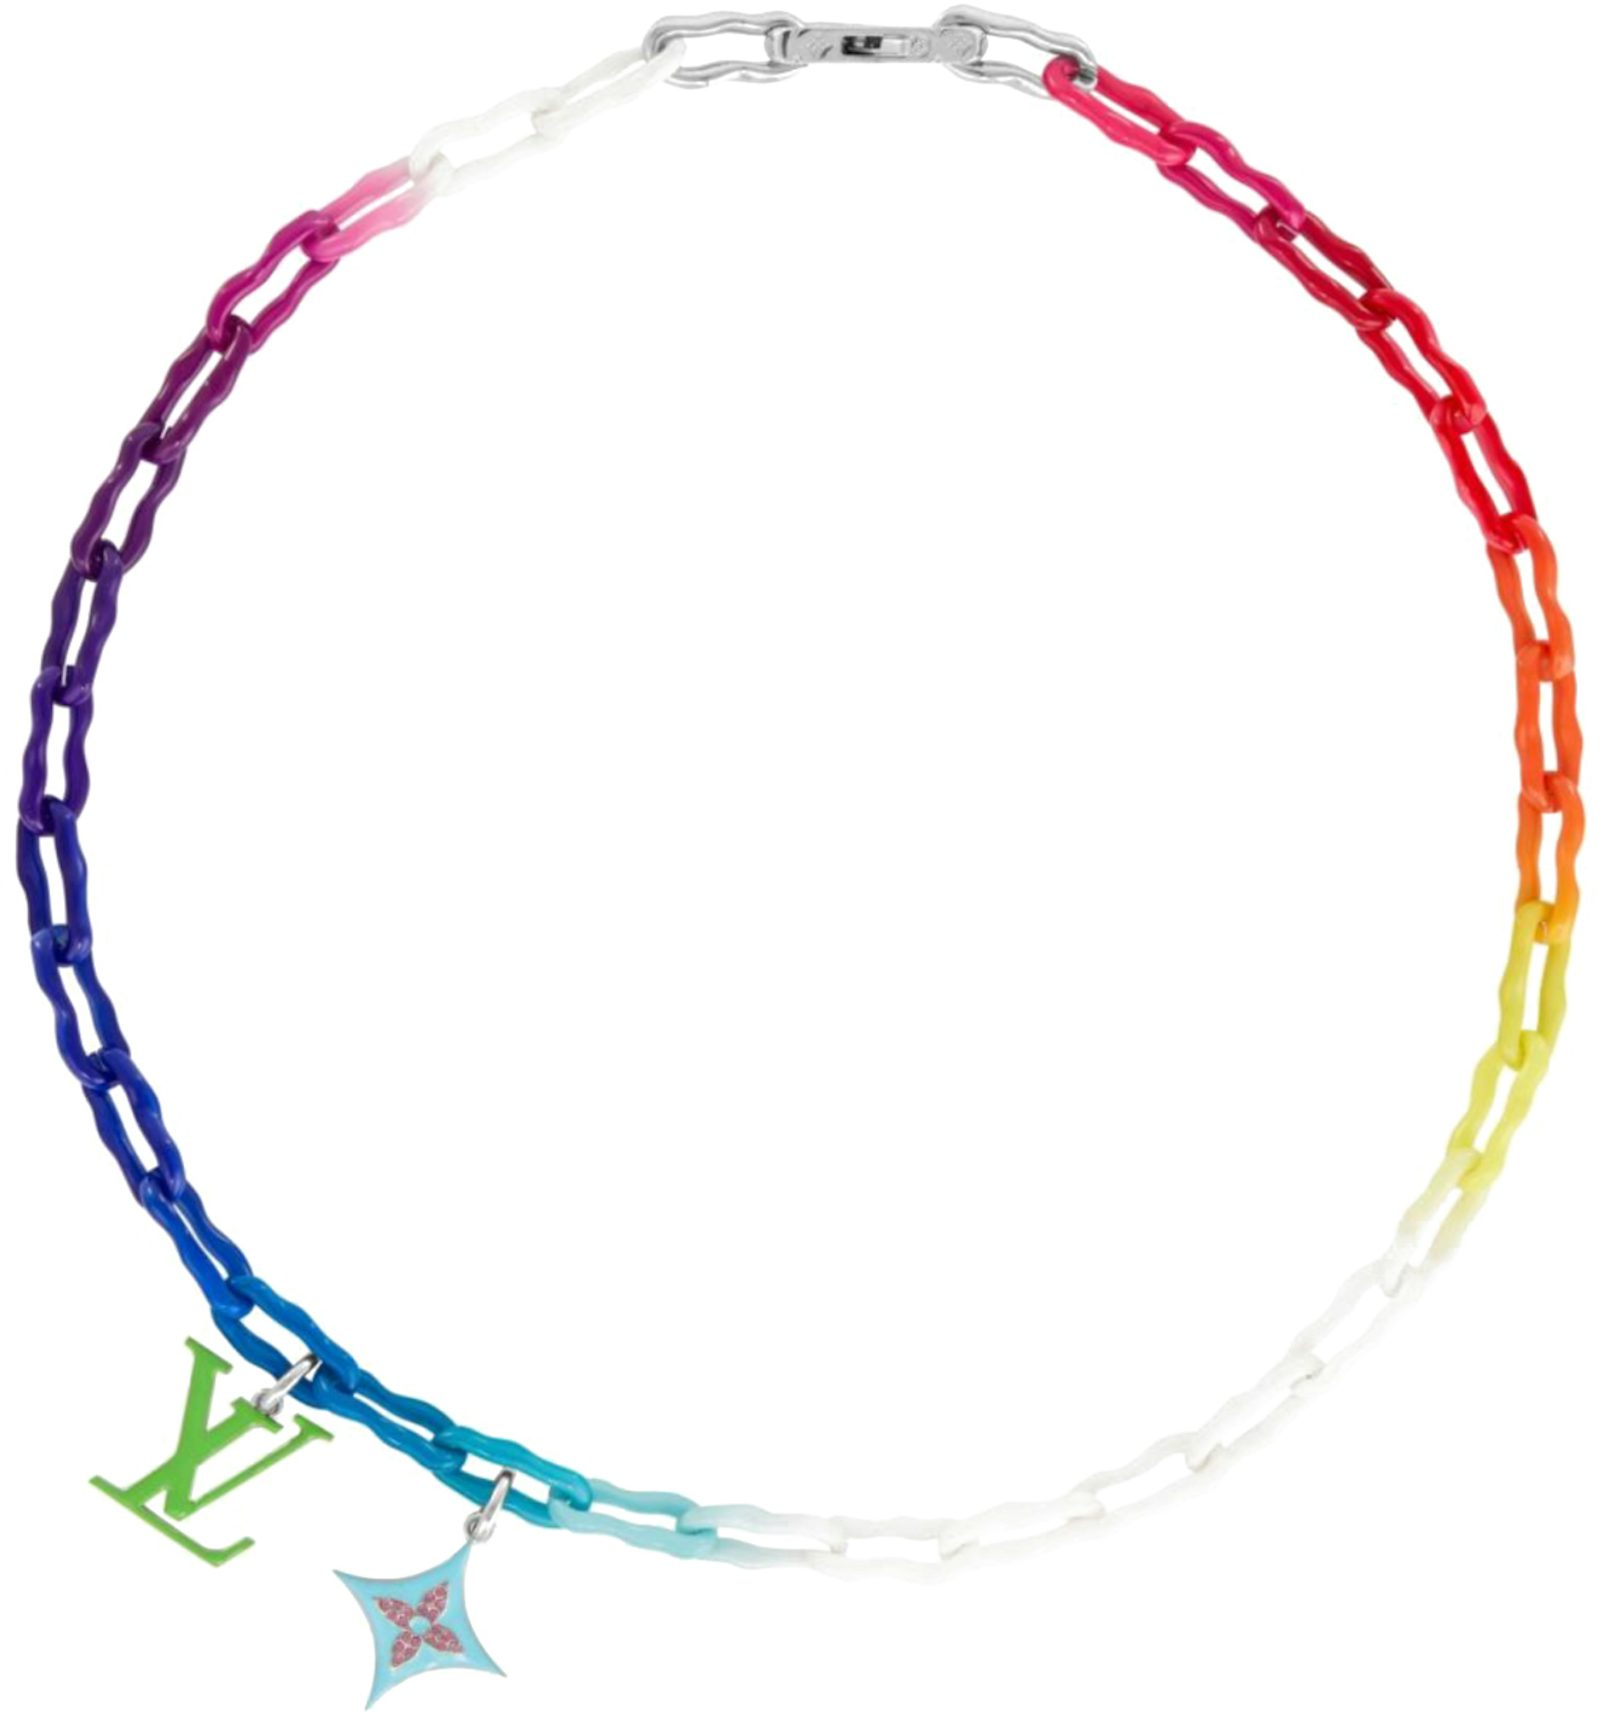 Louis Vuitton Ceramic Chain Bracelet Rainbow